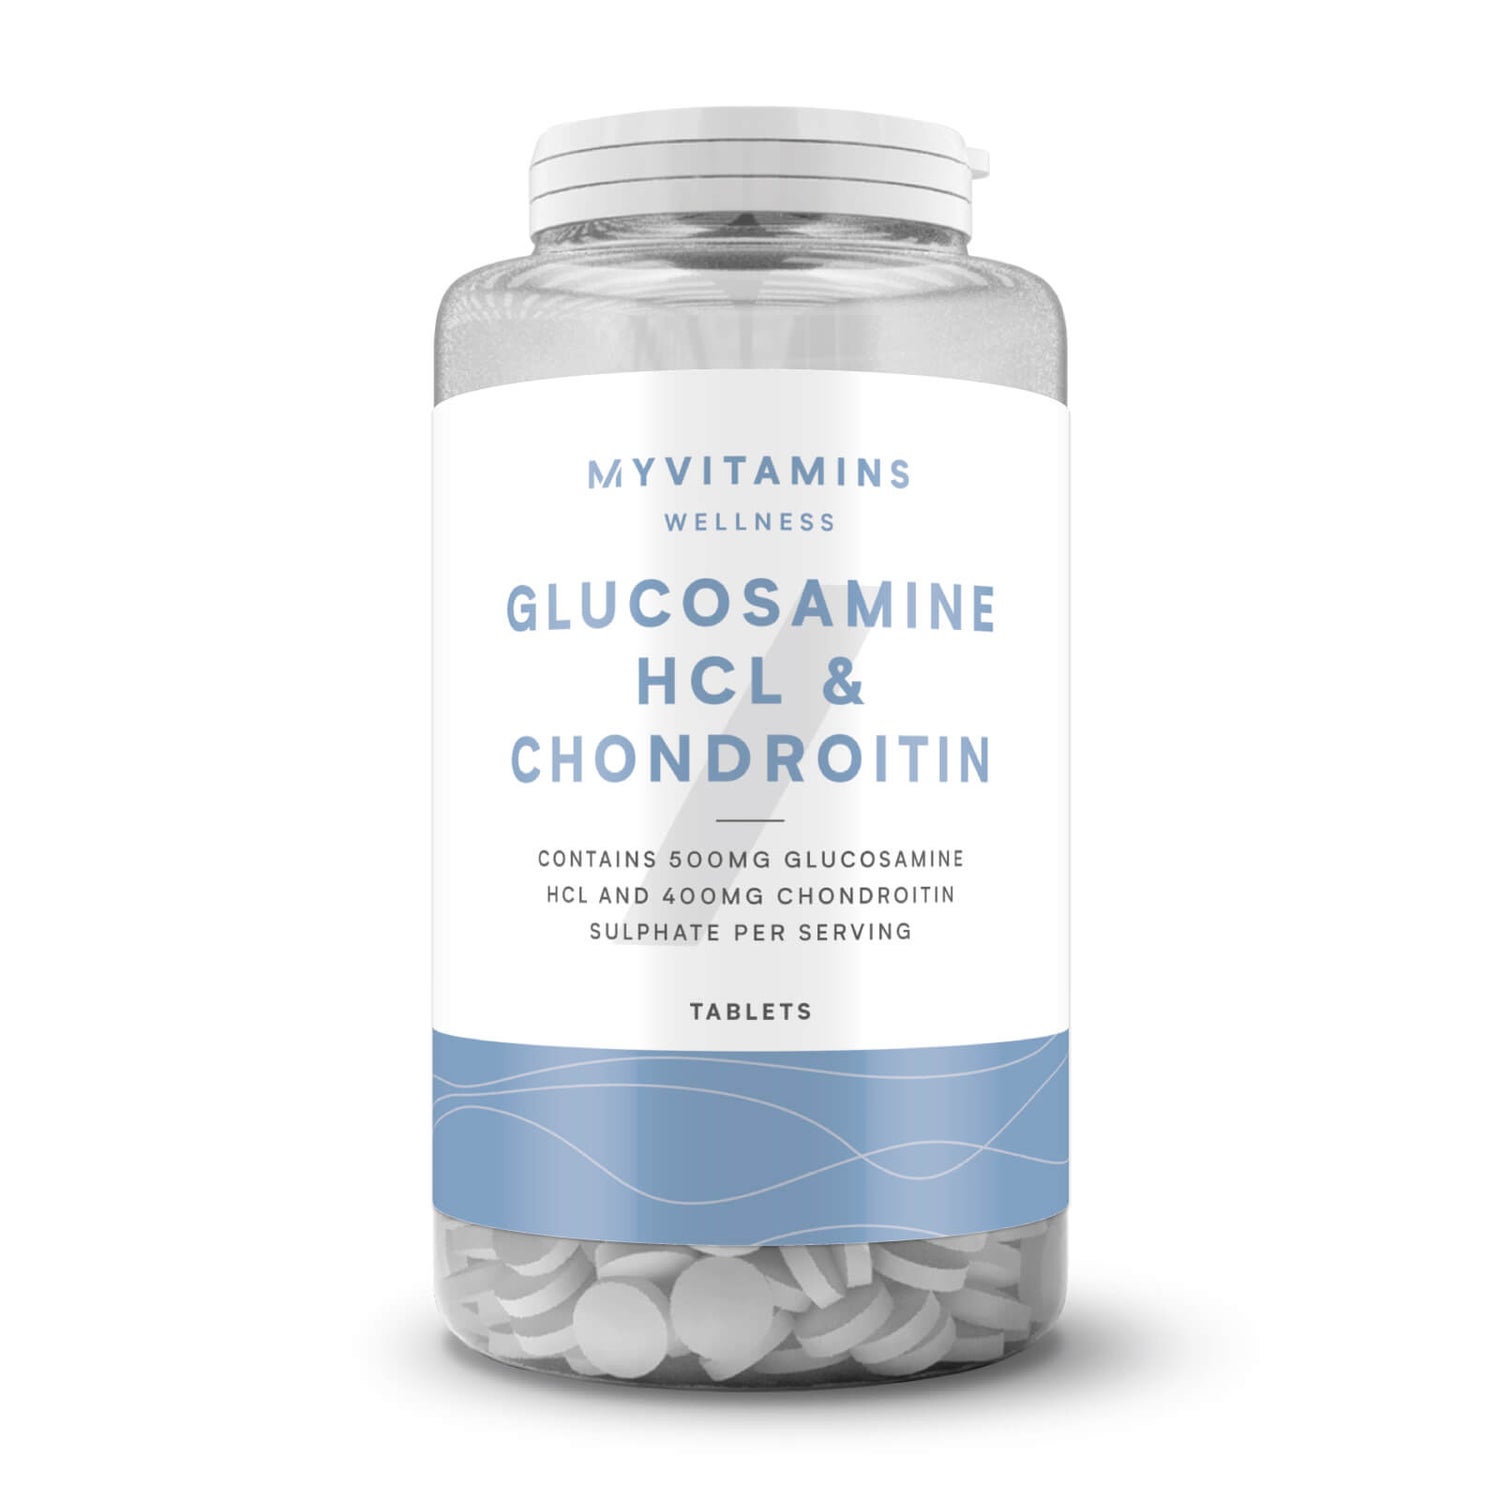 atsiliepimai apie gliukozamino chondroitino